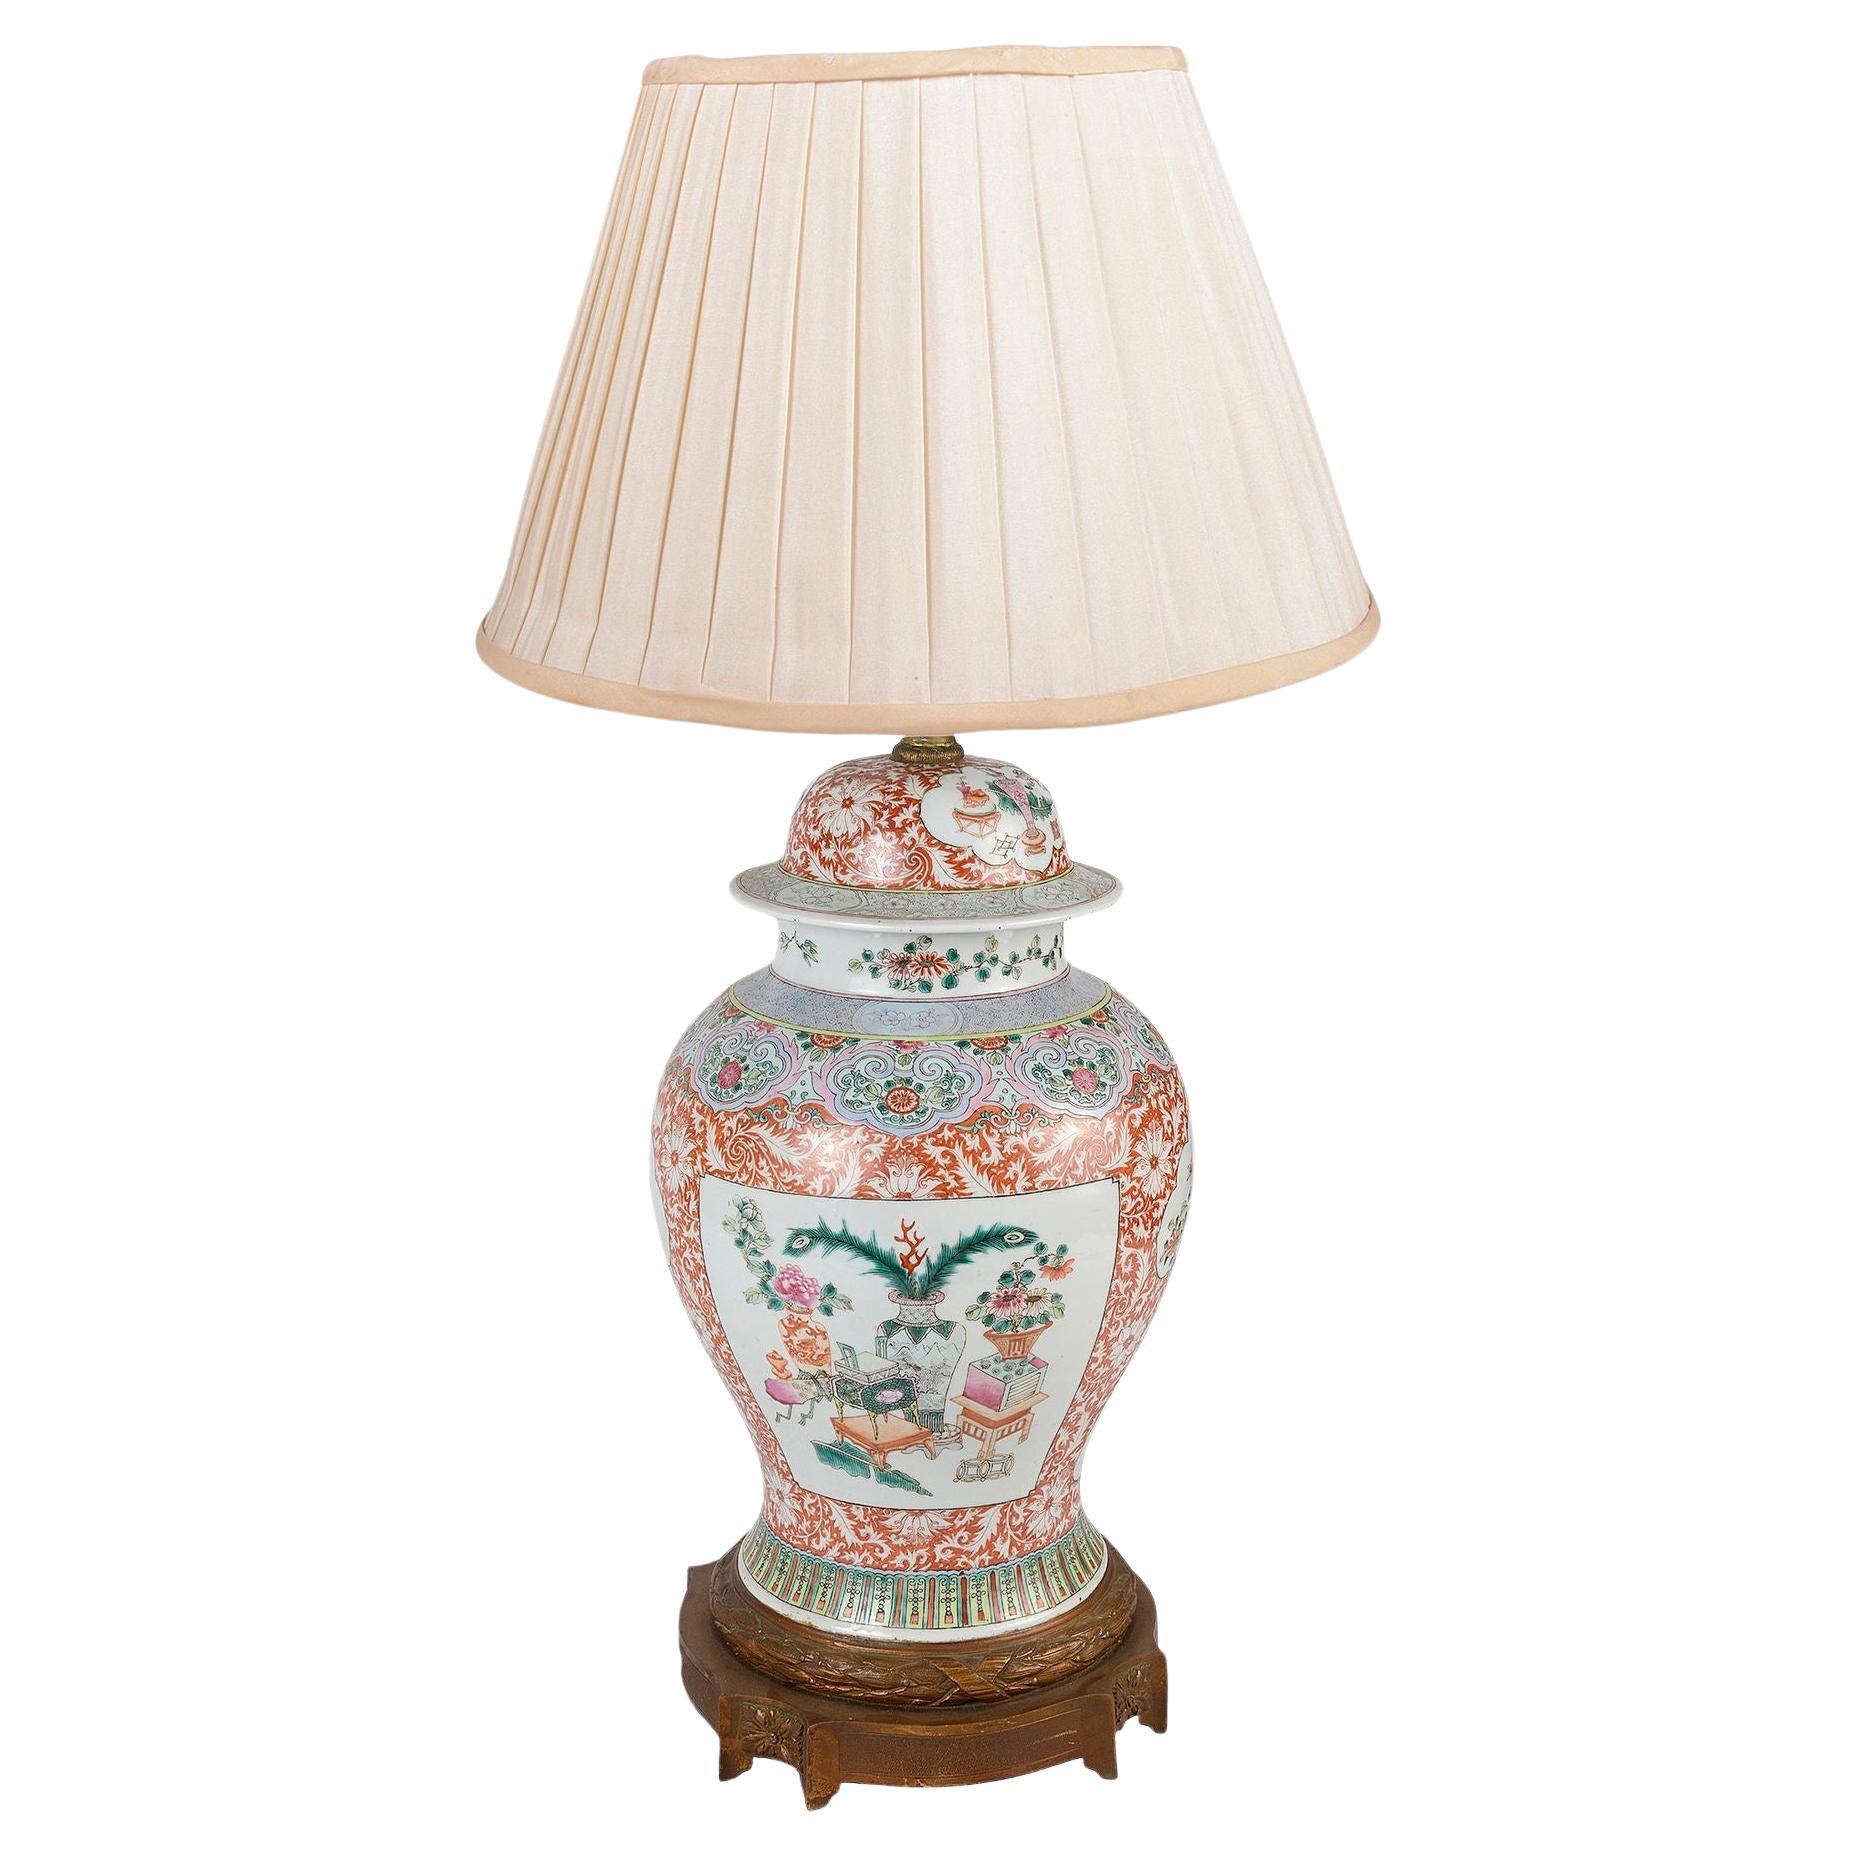 Lampe de la famille rose chinoise du 19e siècle.